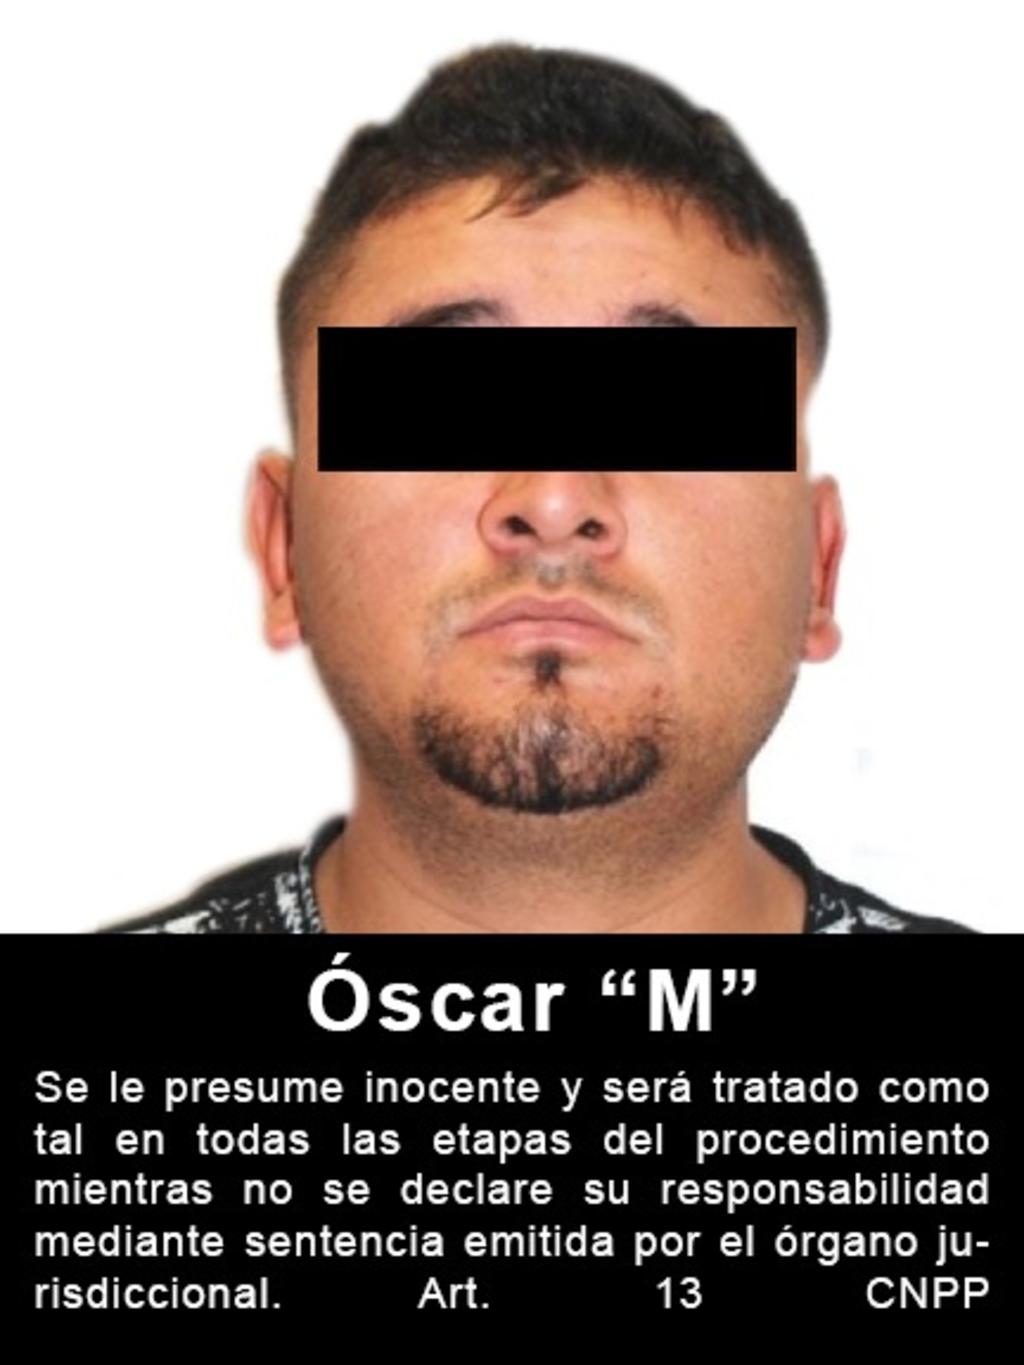 En marzo de 2011, elementos de la Secretaría de la Defensa Nacional (SEDENA) realizaron la detención de Óscar “M”, Carlos “L” y Jean Paul “M”. 